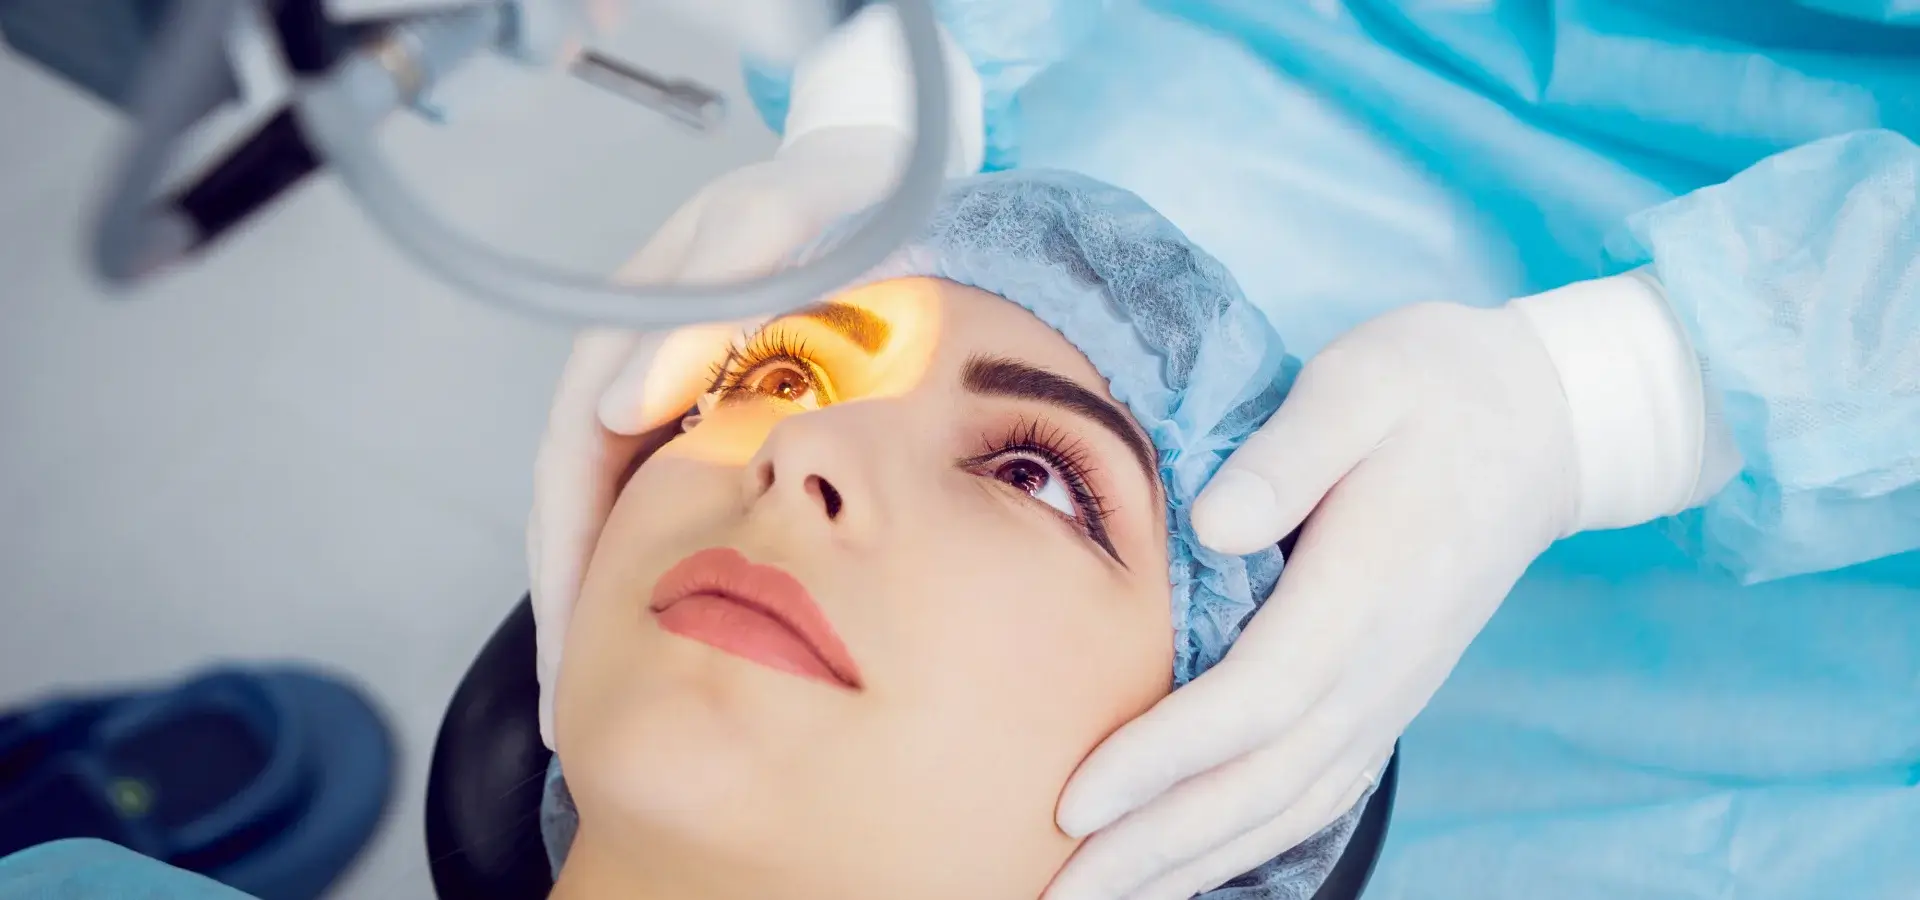 cirugia-refractiva-de-ojos-operacion-refractiva-de-ojos-con-laser-oftalmosalud